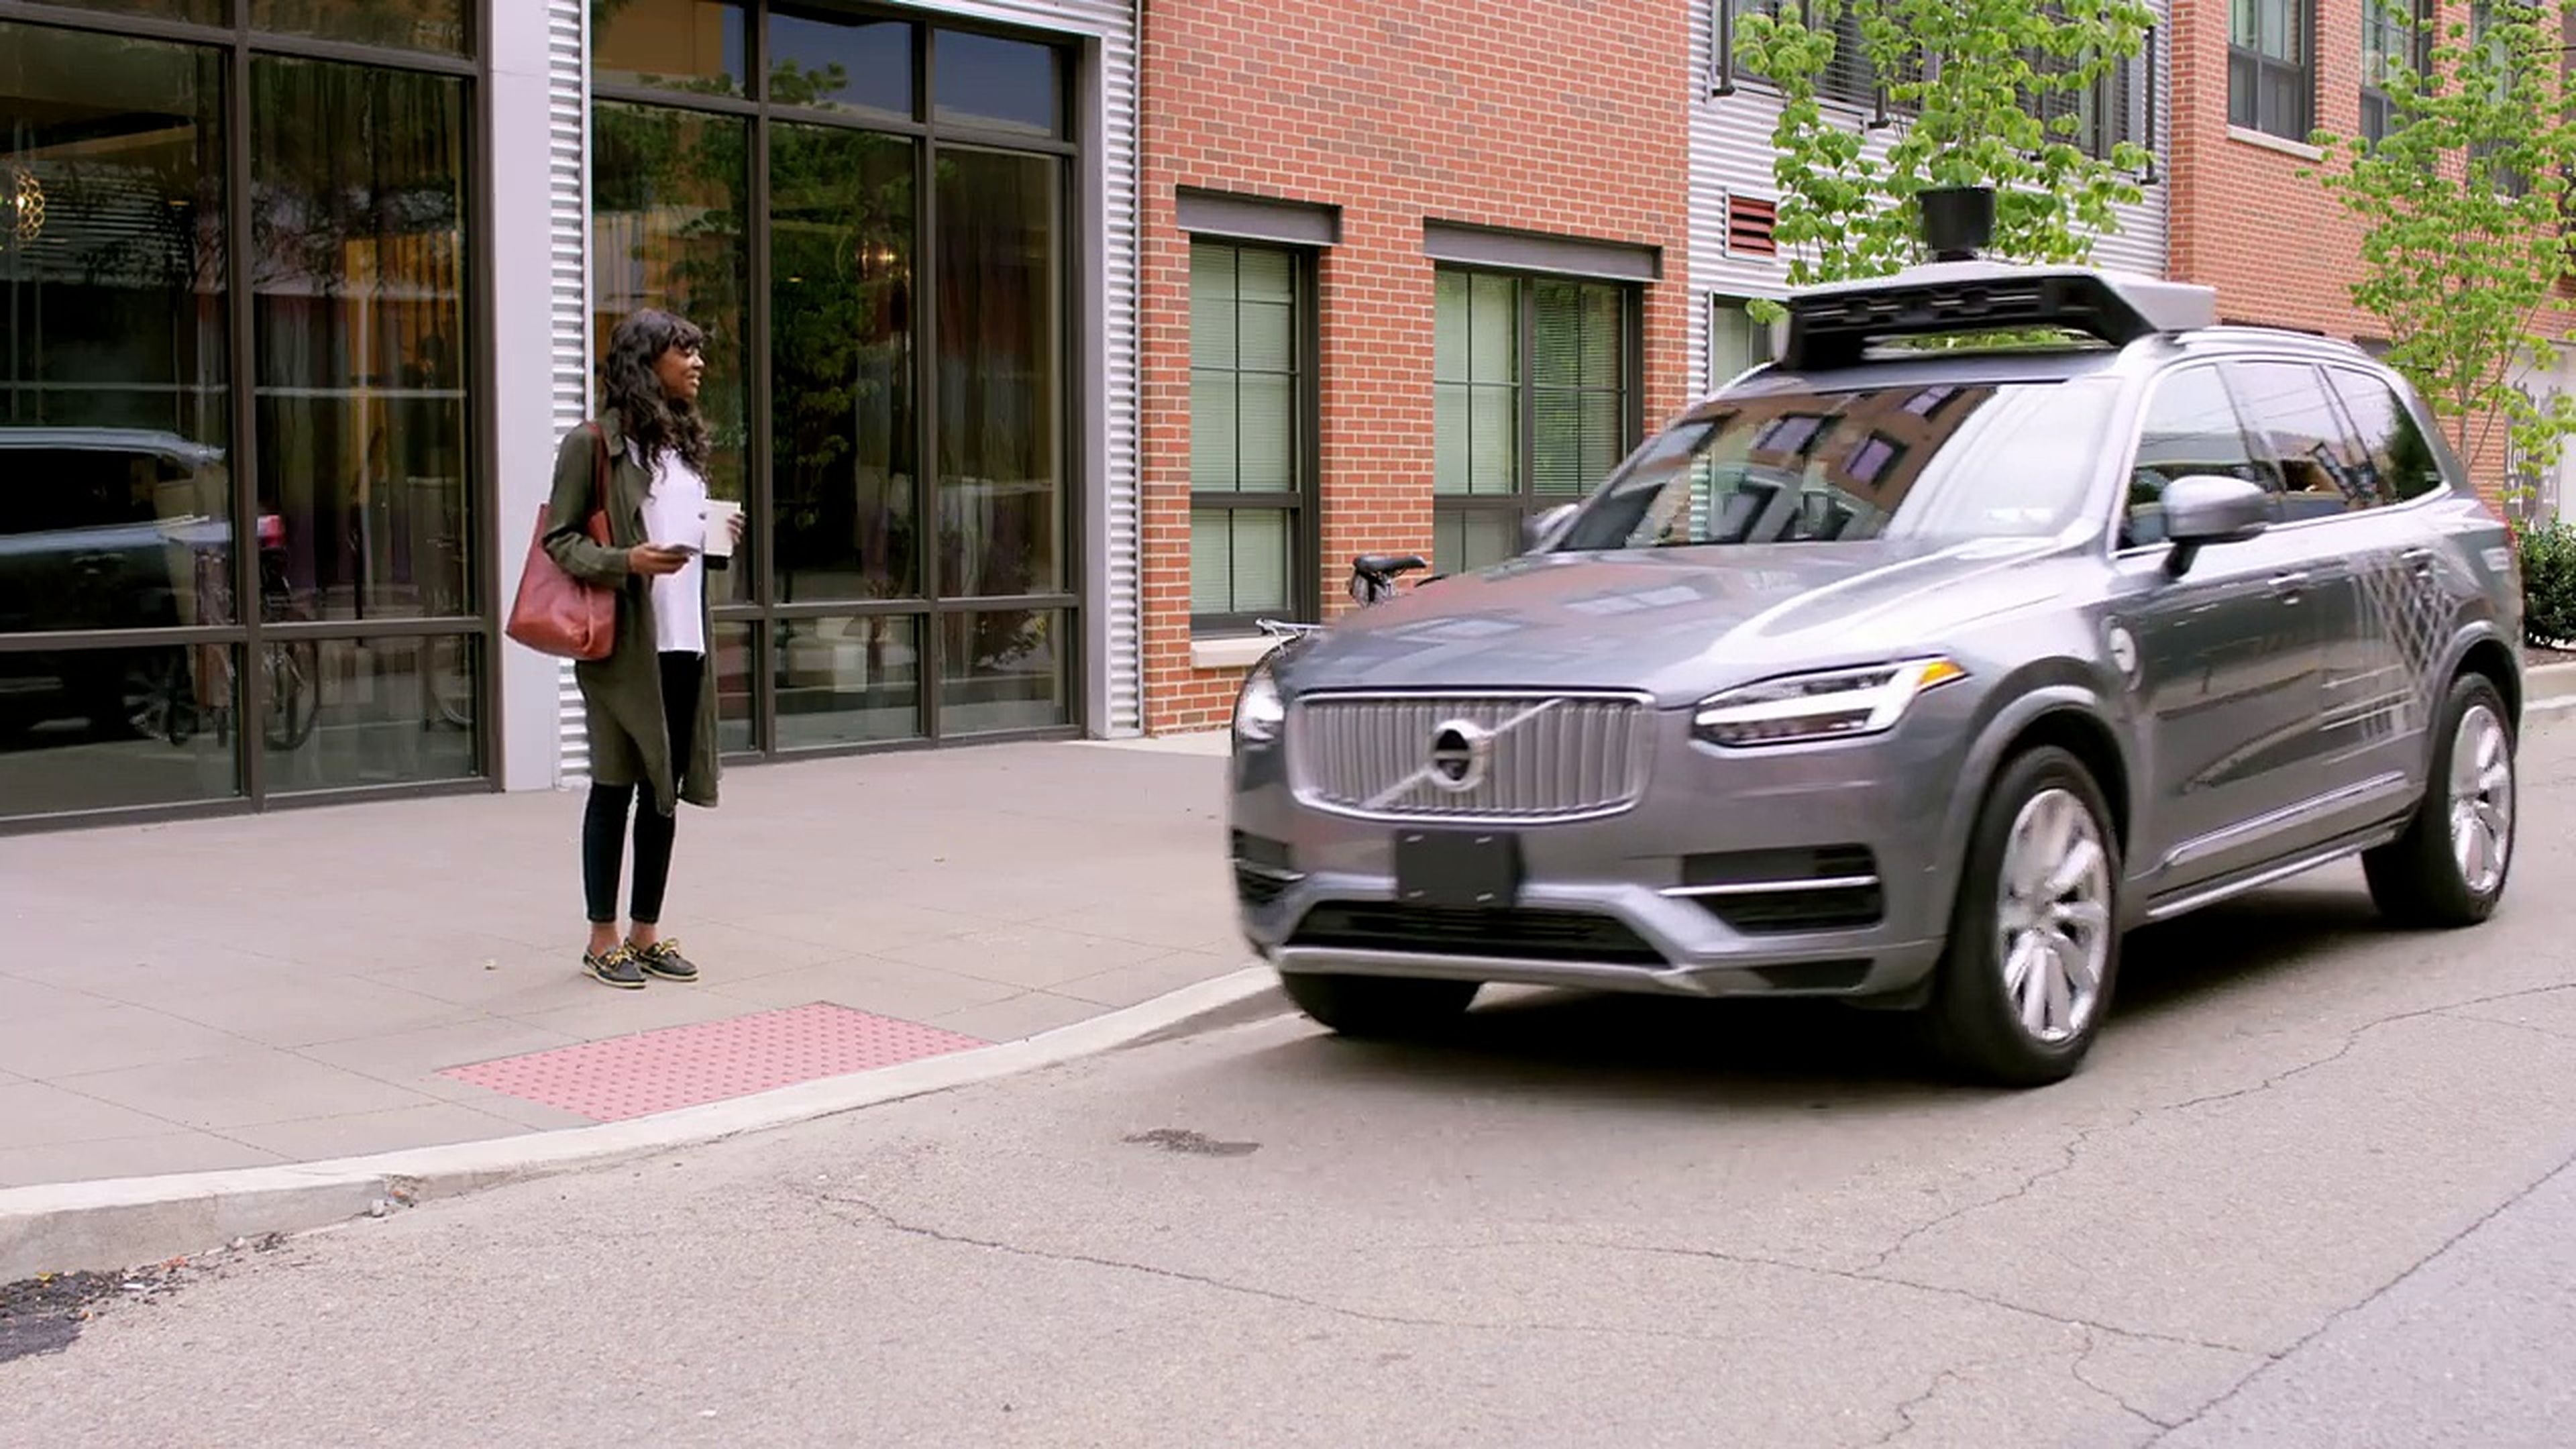 VÍDEO: La ciudad falsa que ha construido Uber para probar su coche autónomo